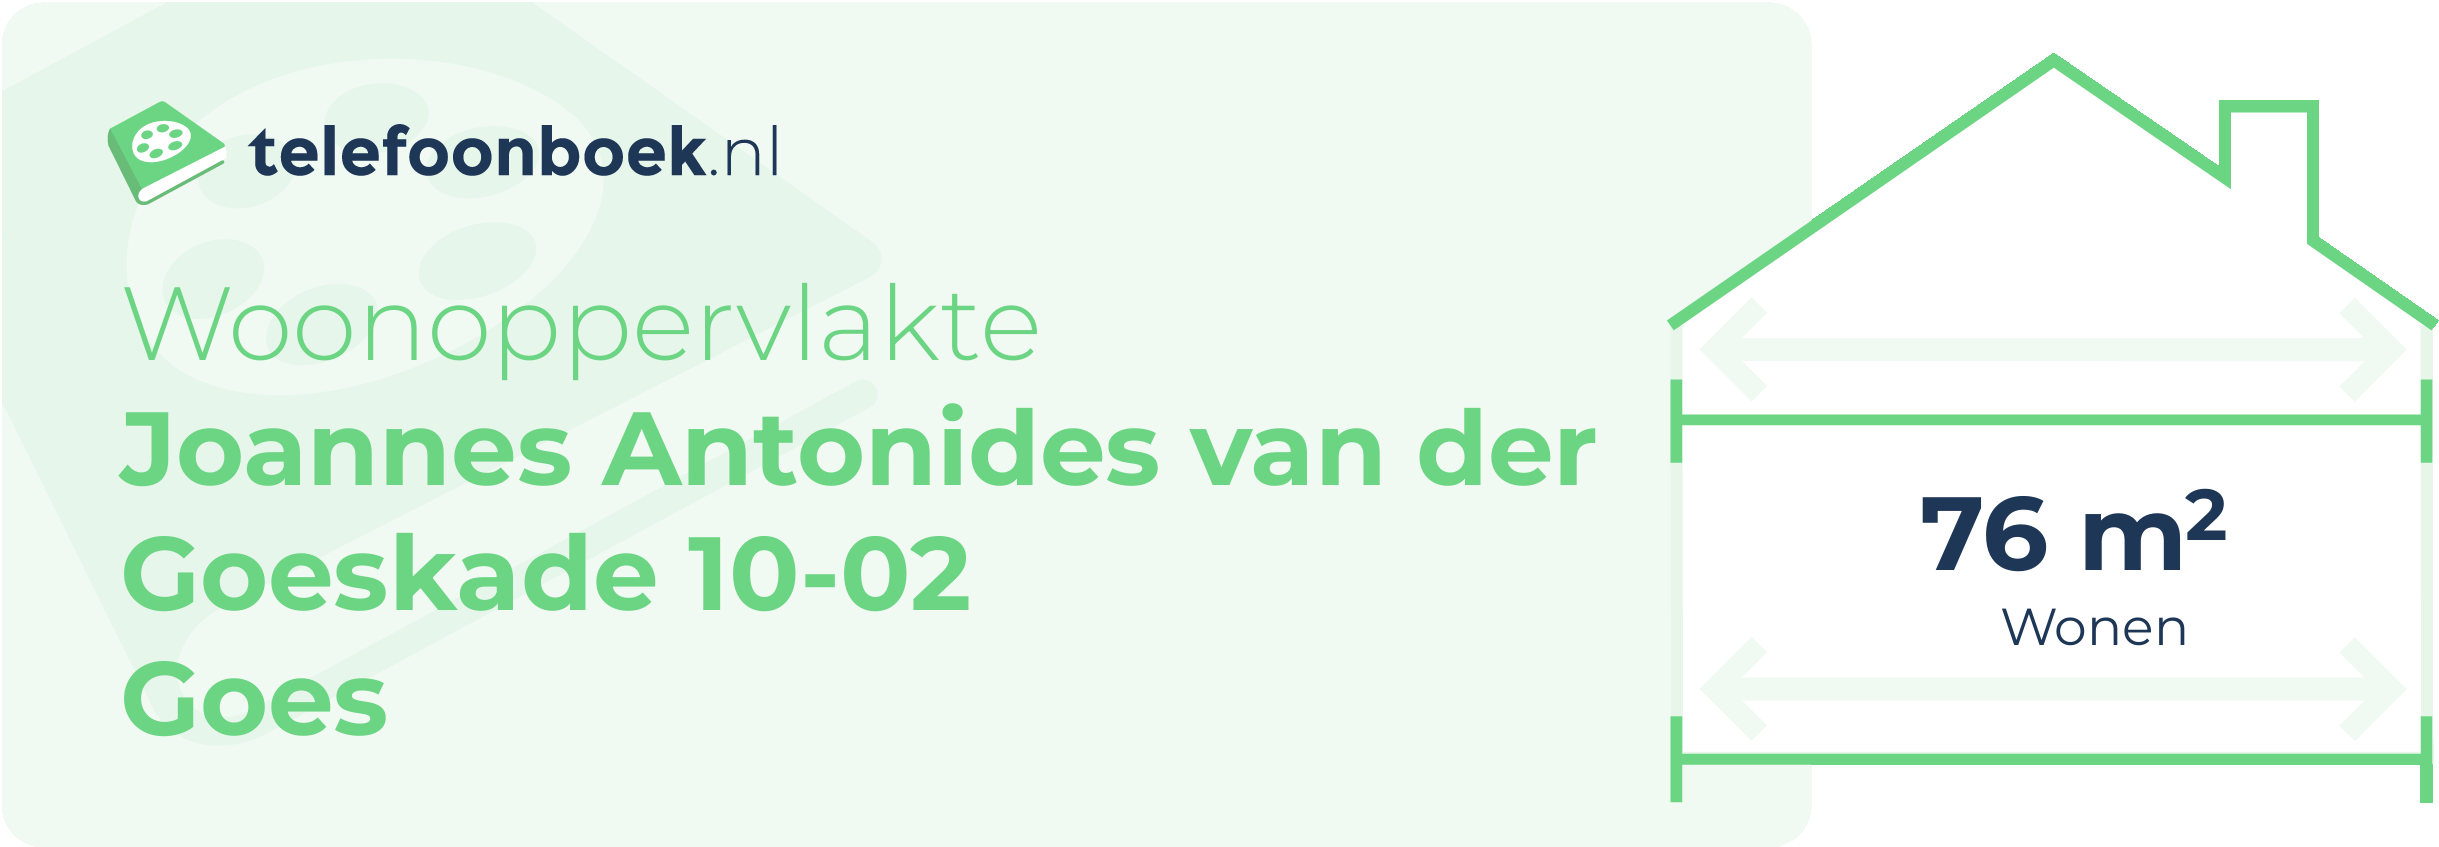 Woonoppervlakte Joannes Antonides Van Der Goeskade 10-02 Goes